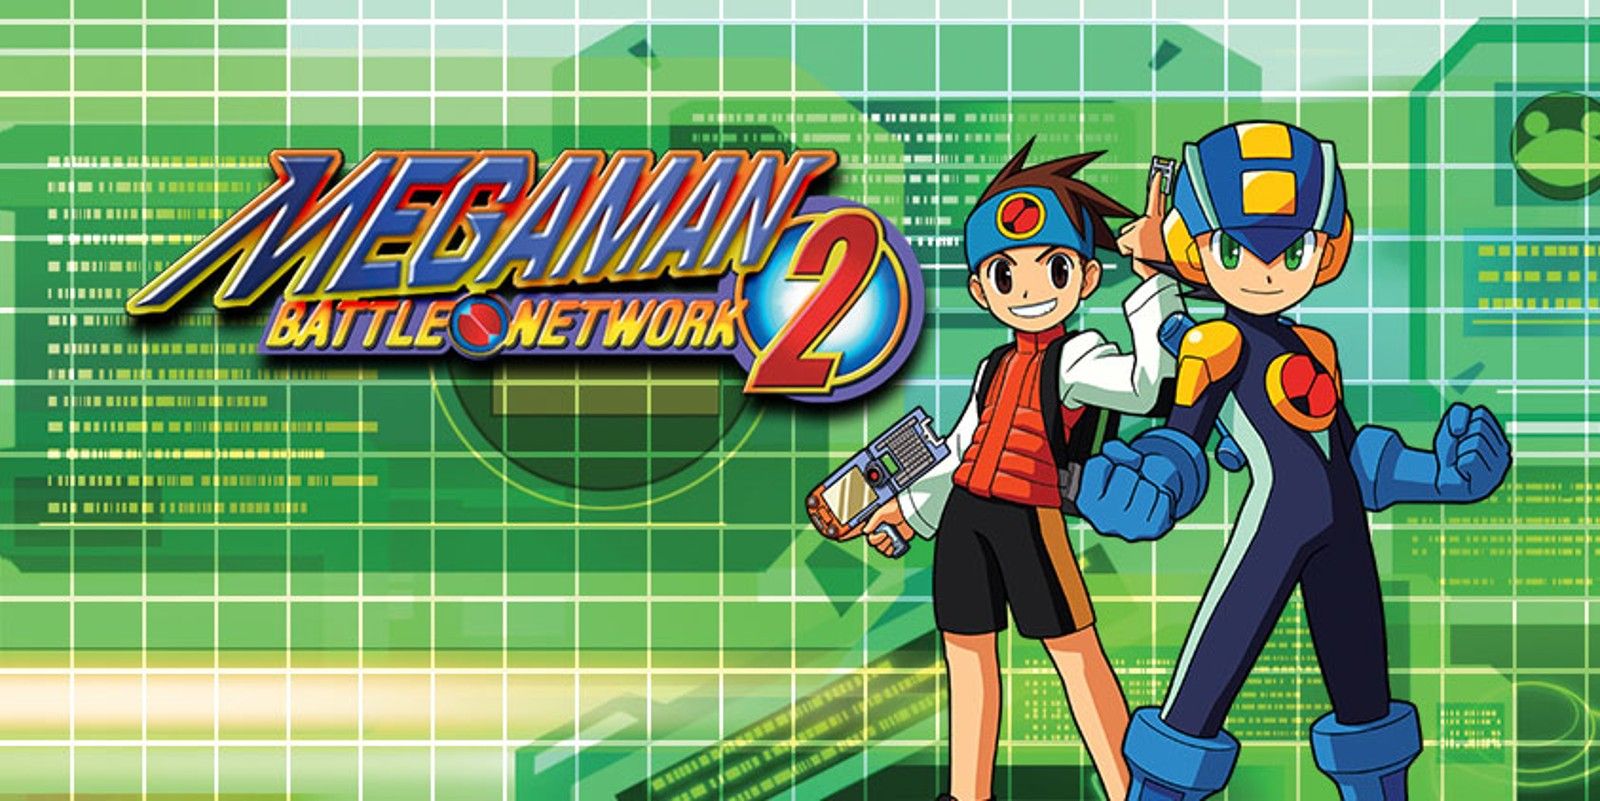 Promo art for Megaman Battle Network 2